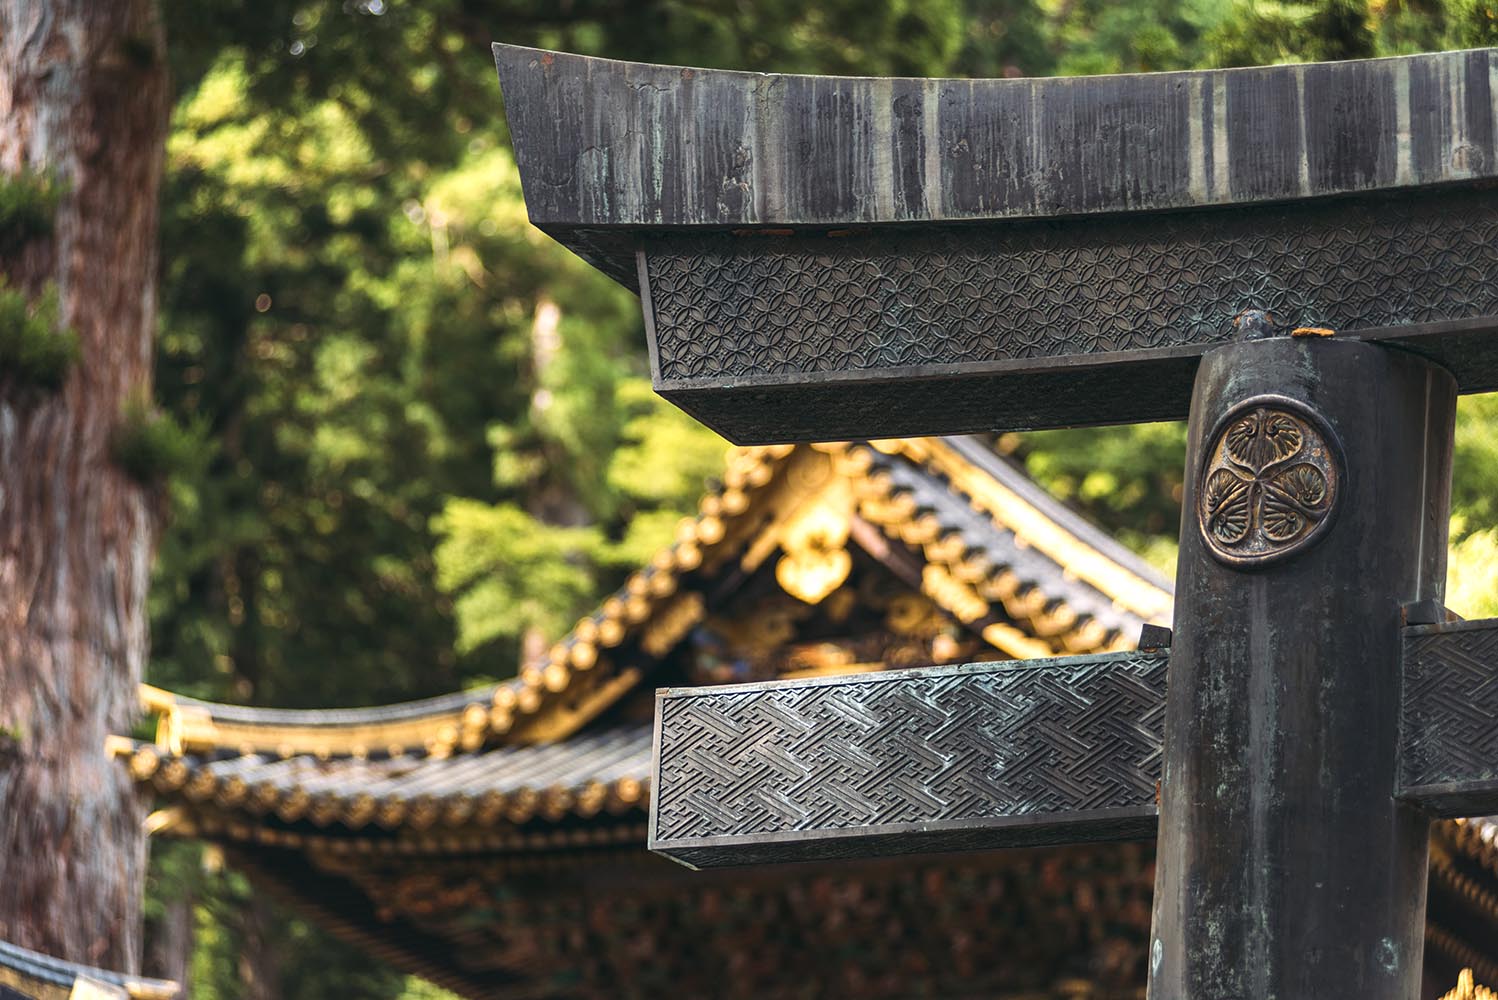 Japan, Nikko Sanctuary, Temple district